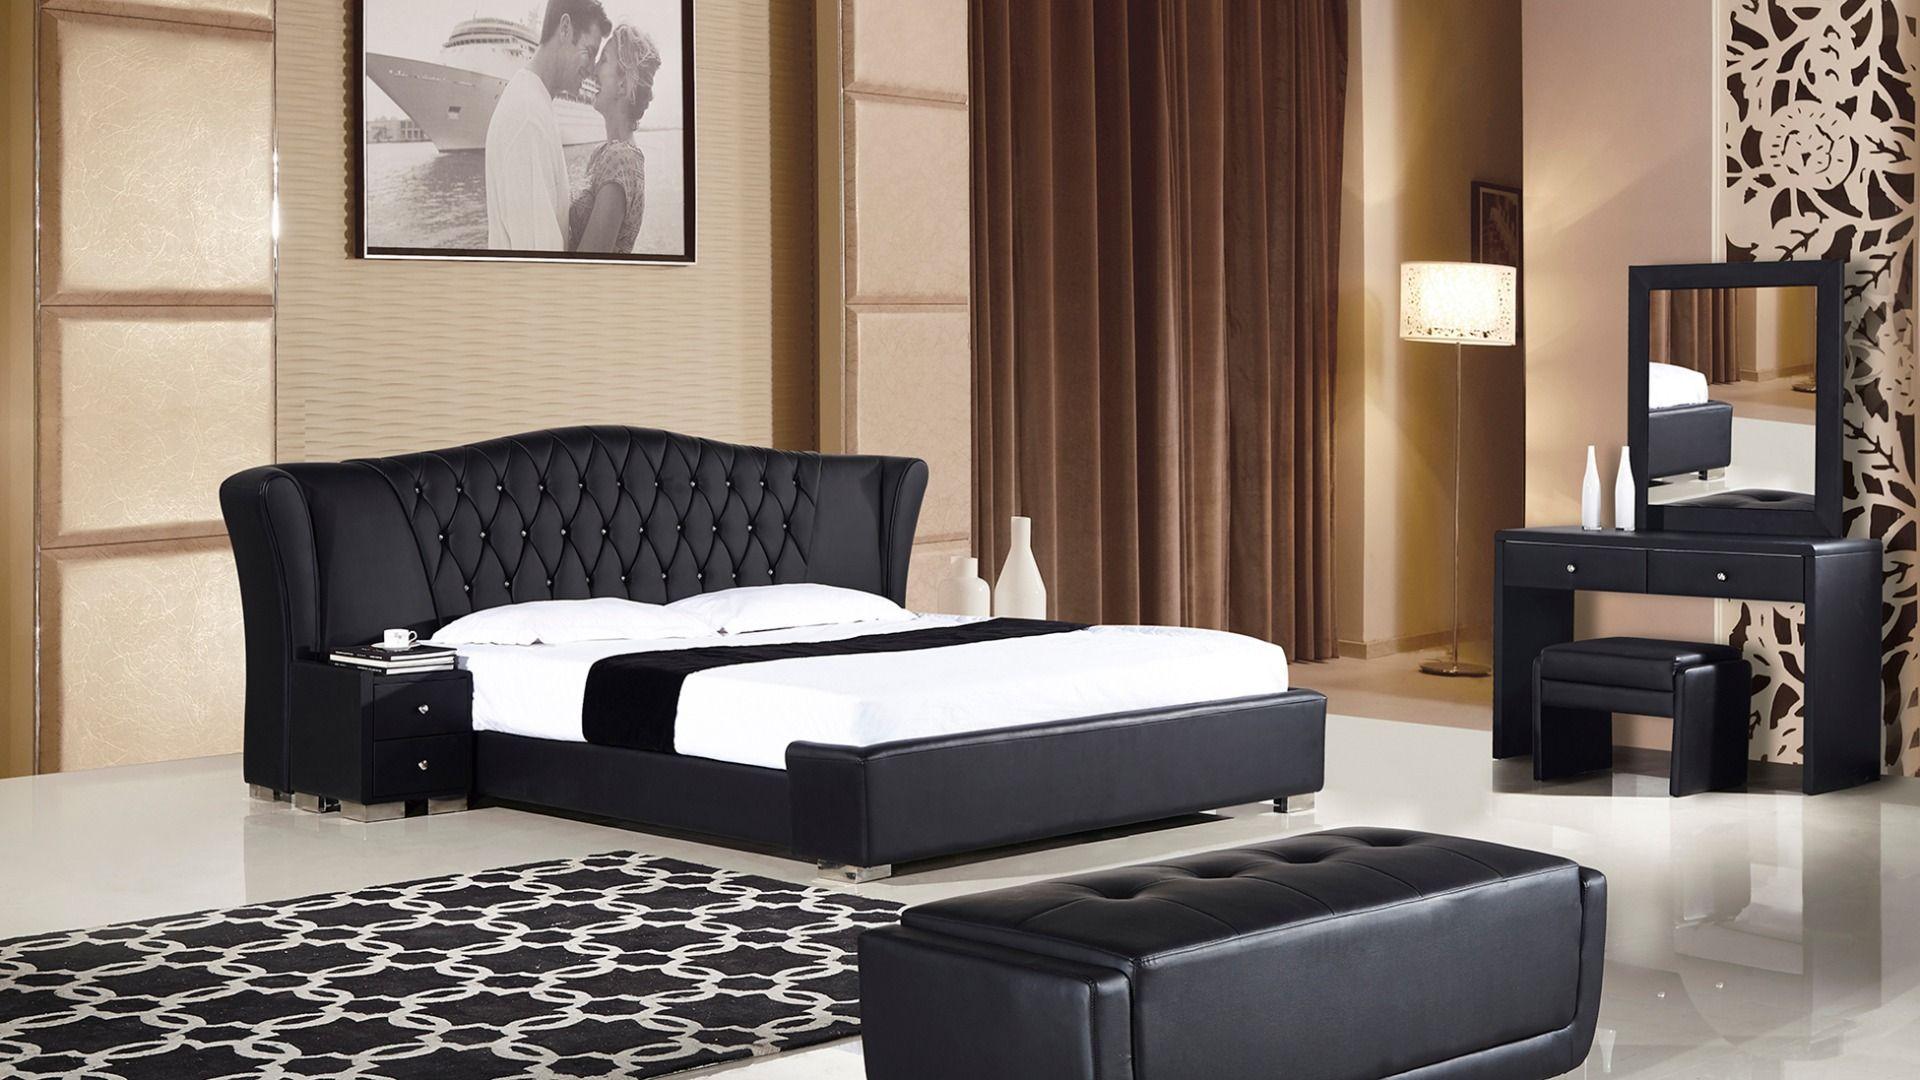 

    
B-D028-BK-Q-3PC American Eagle Furniture Platform Bedroom Set
